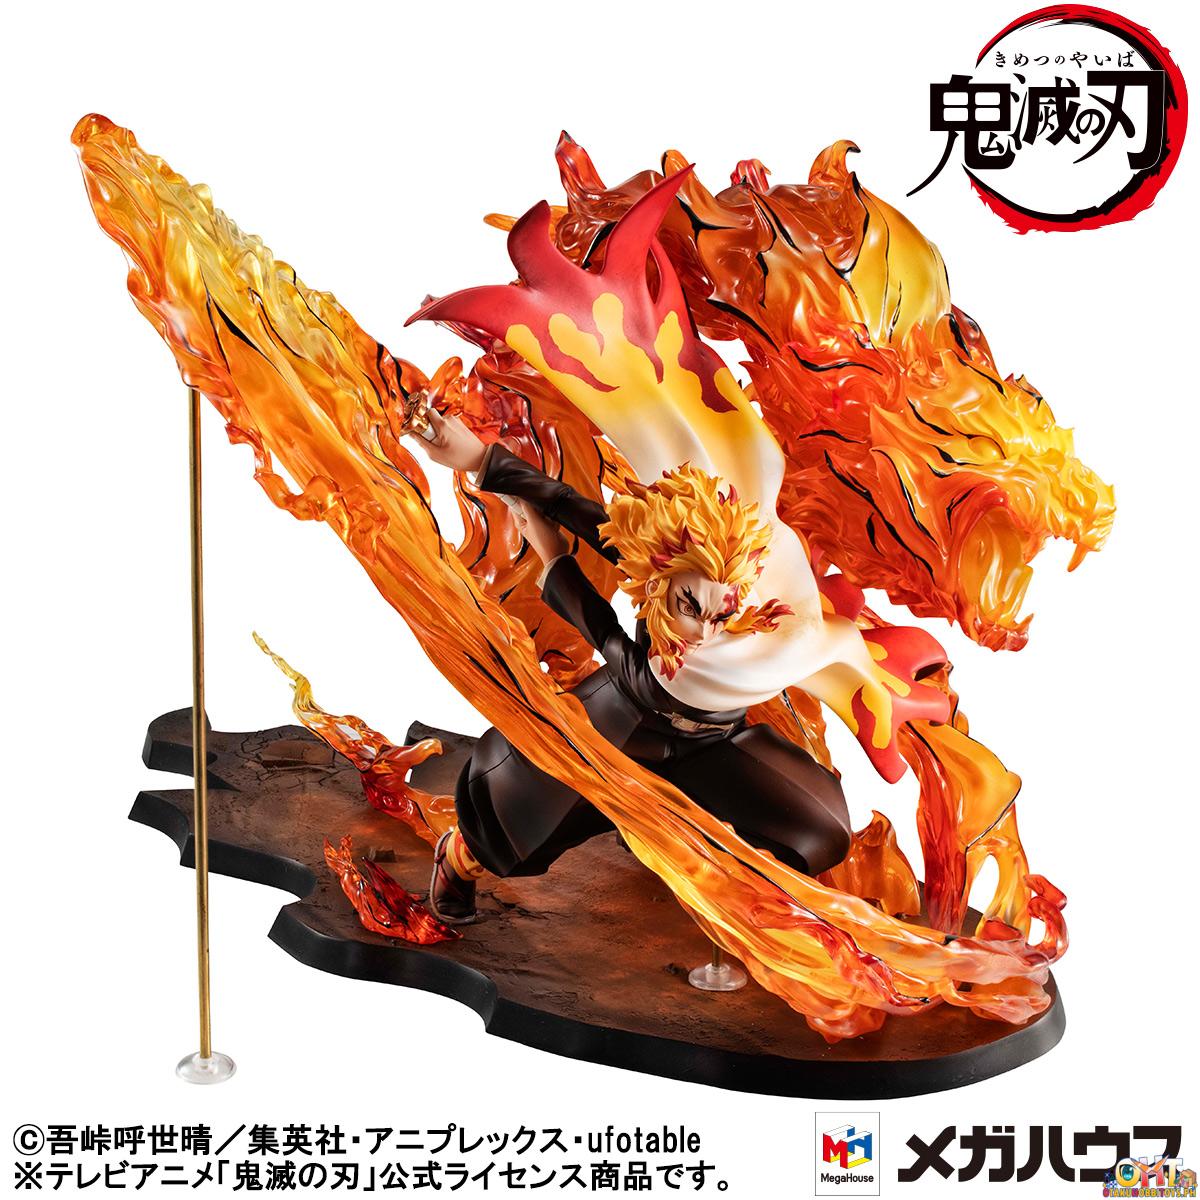 Megahouse Precious G.E.M. Series Demon Slayer: Kimetsu no Yaiba Kyojuro Rengoku Fifth Form: Flame Tiger